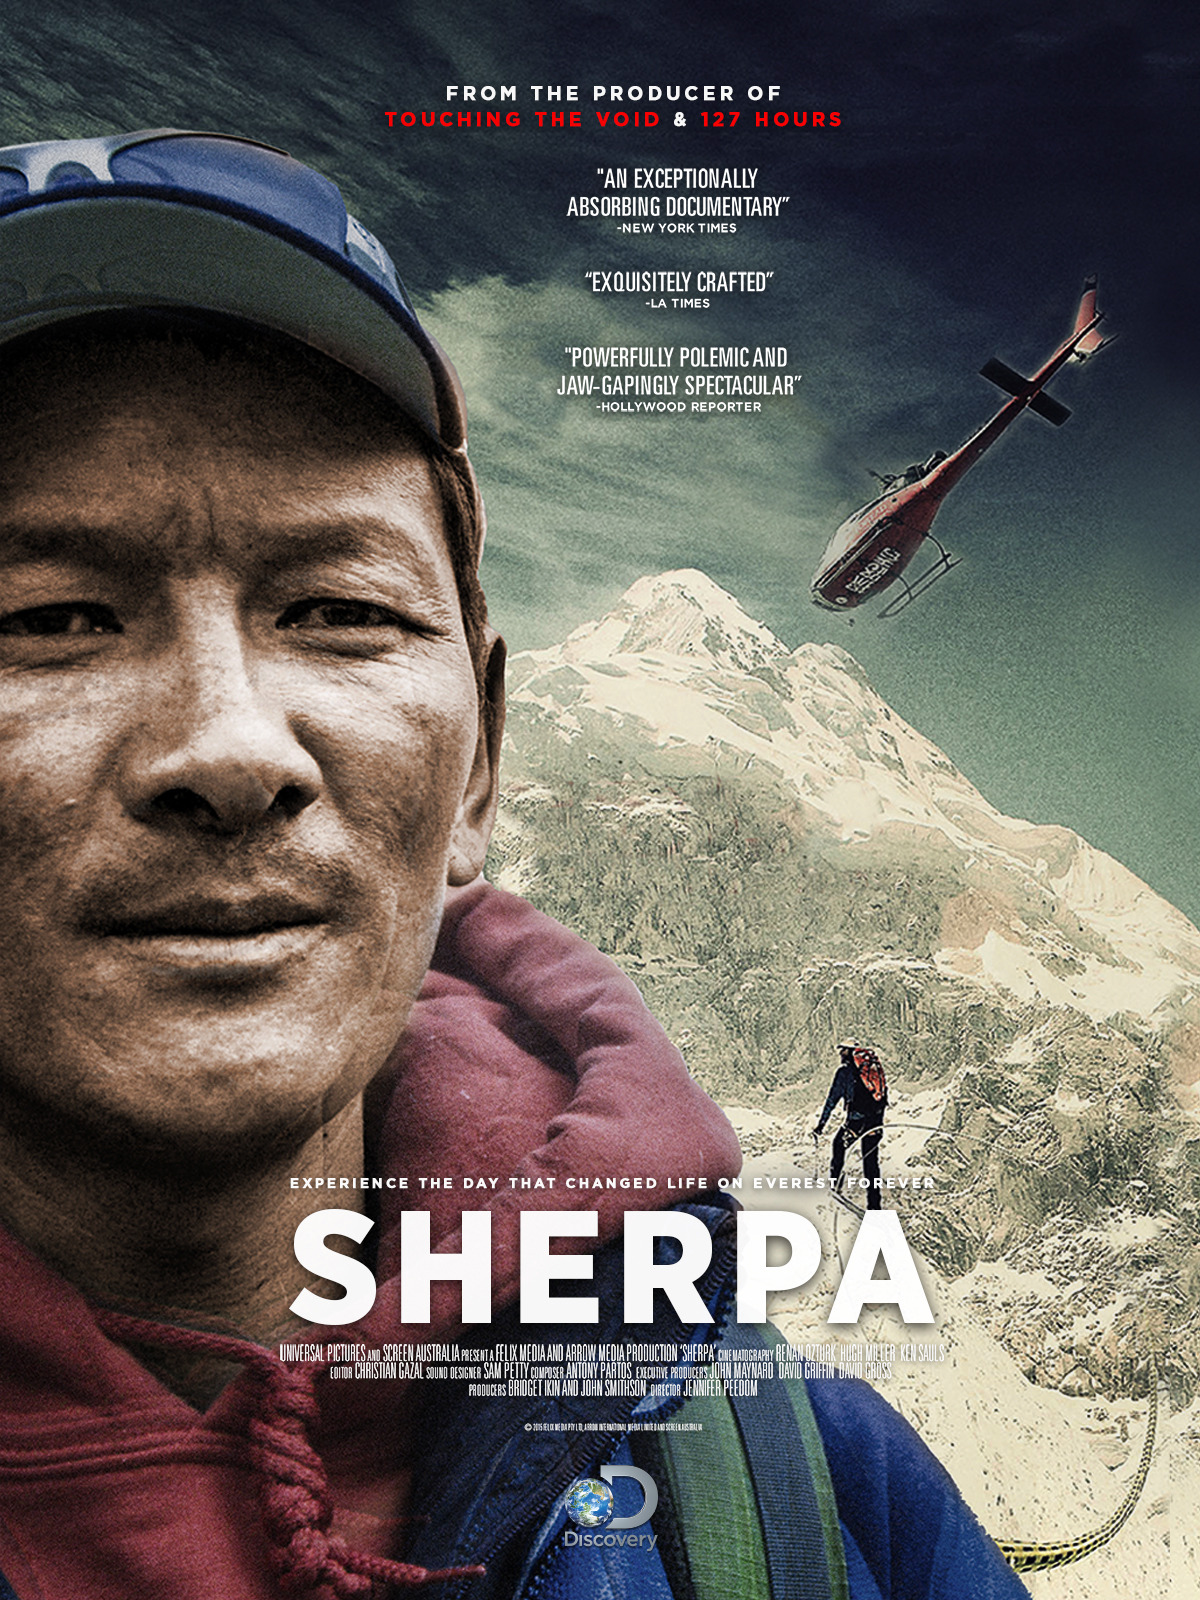 فیلم کوهنوردی «شرپا (Sherpa)» کارگردان: جنیفر پیدام